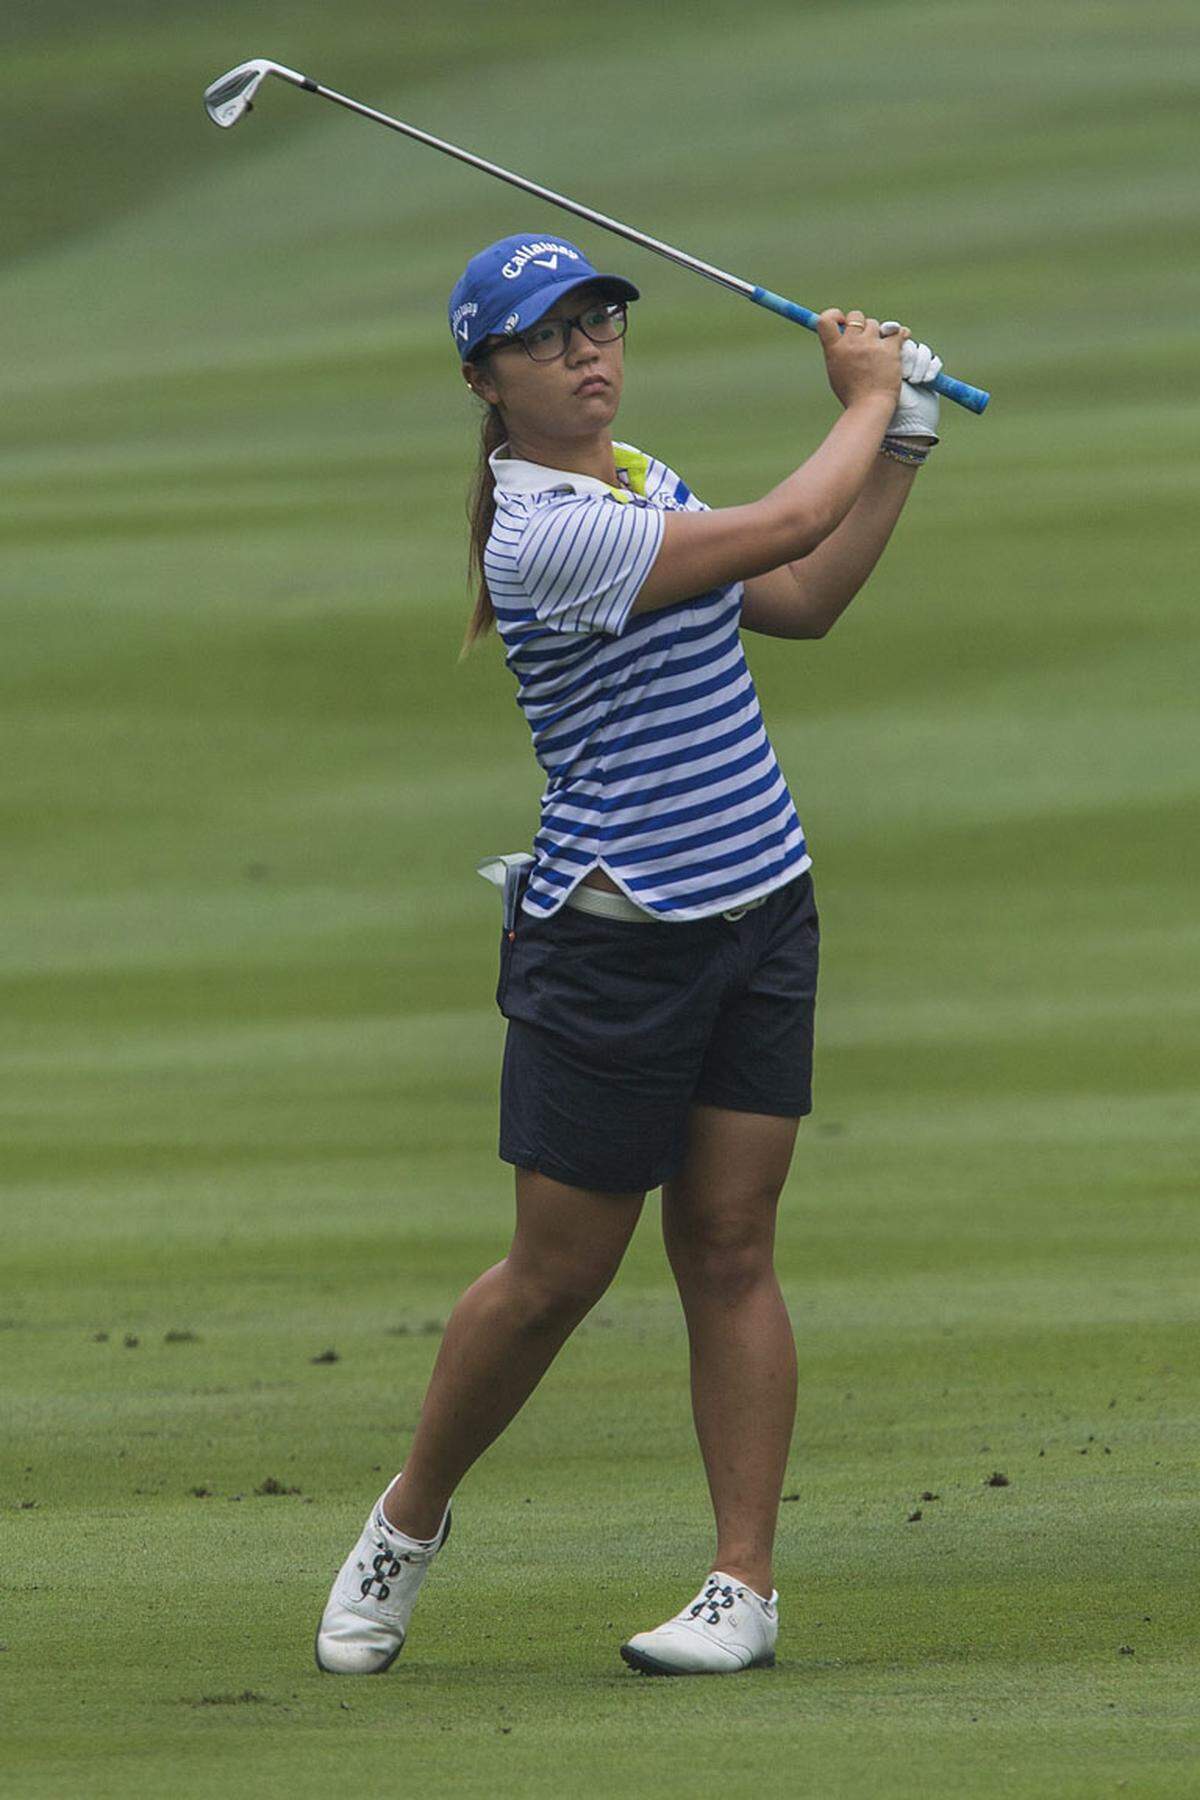 Die Südkoreanerin ist bereits die drittbeste Golferin weltweit und auch die jüngste Millionärin der LPGA (Ladies Professional Golf Association).